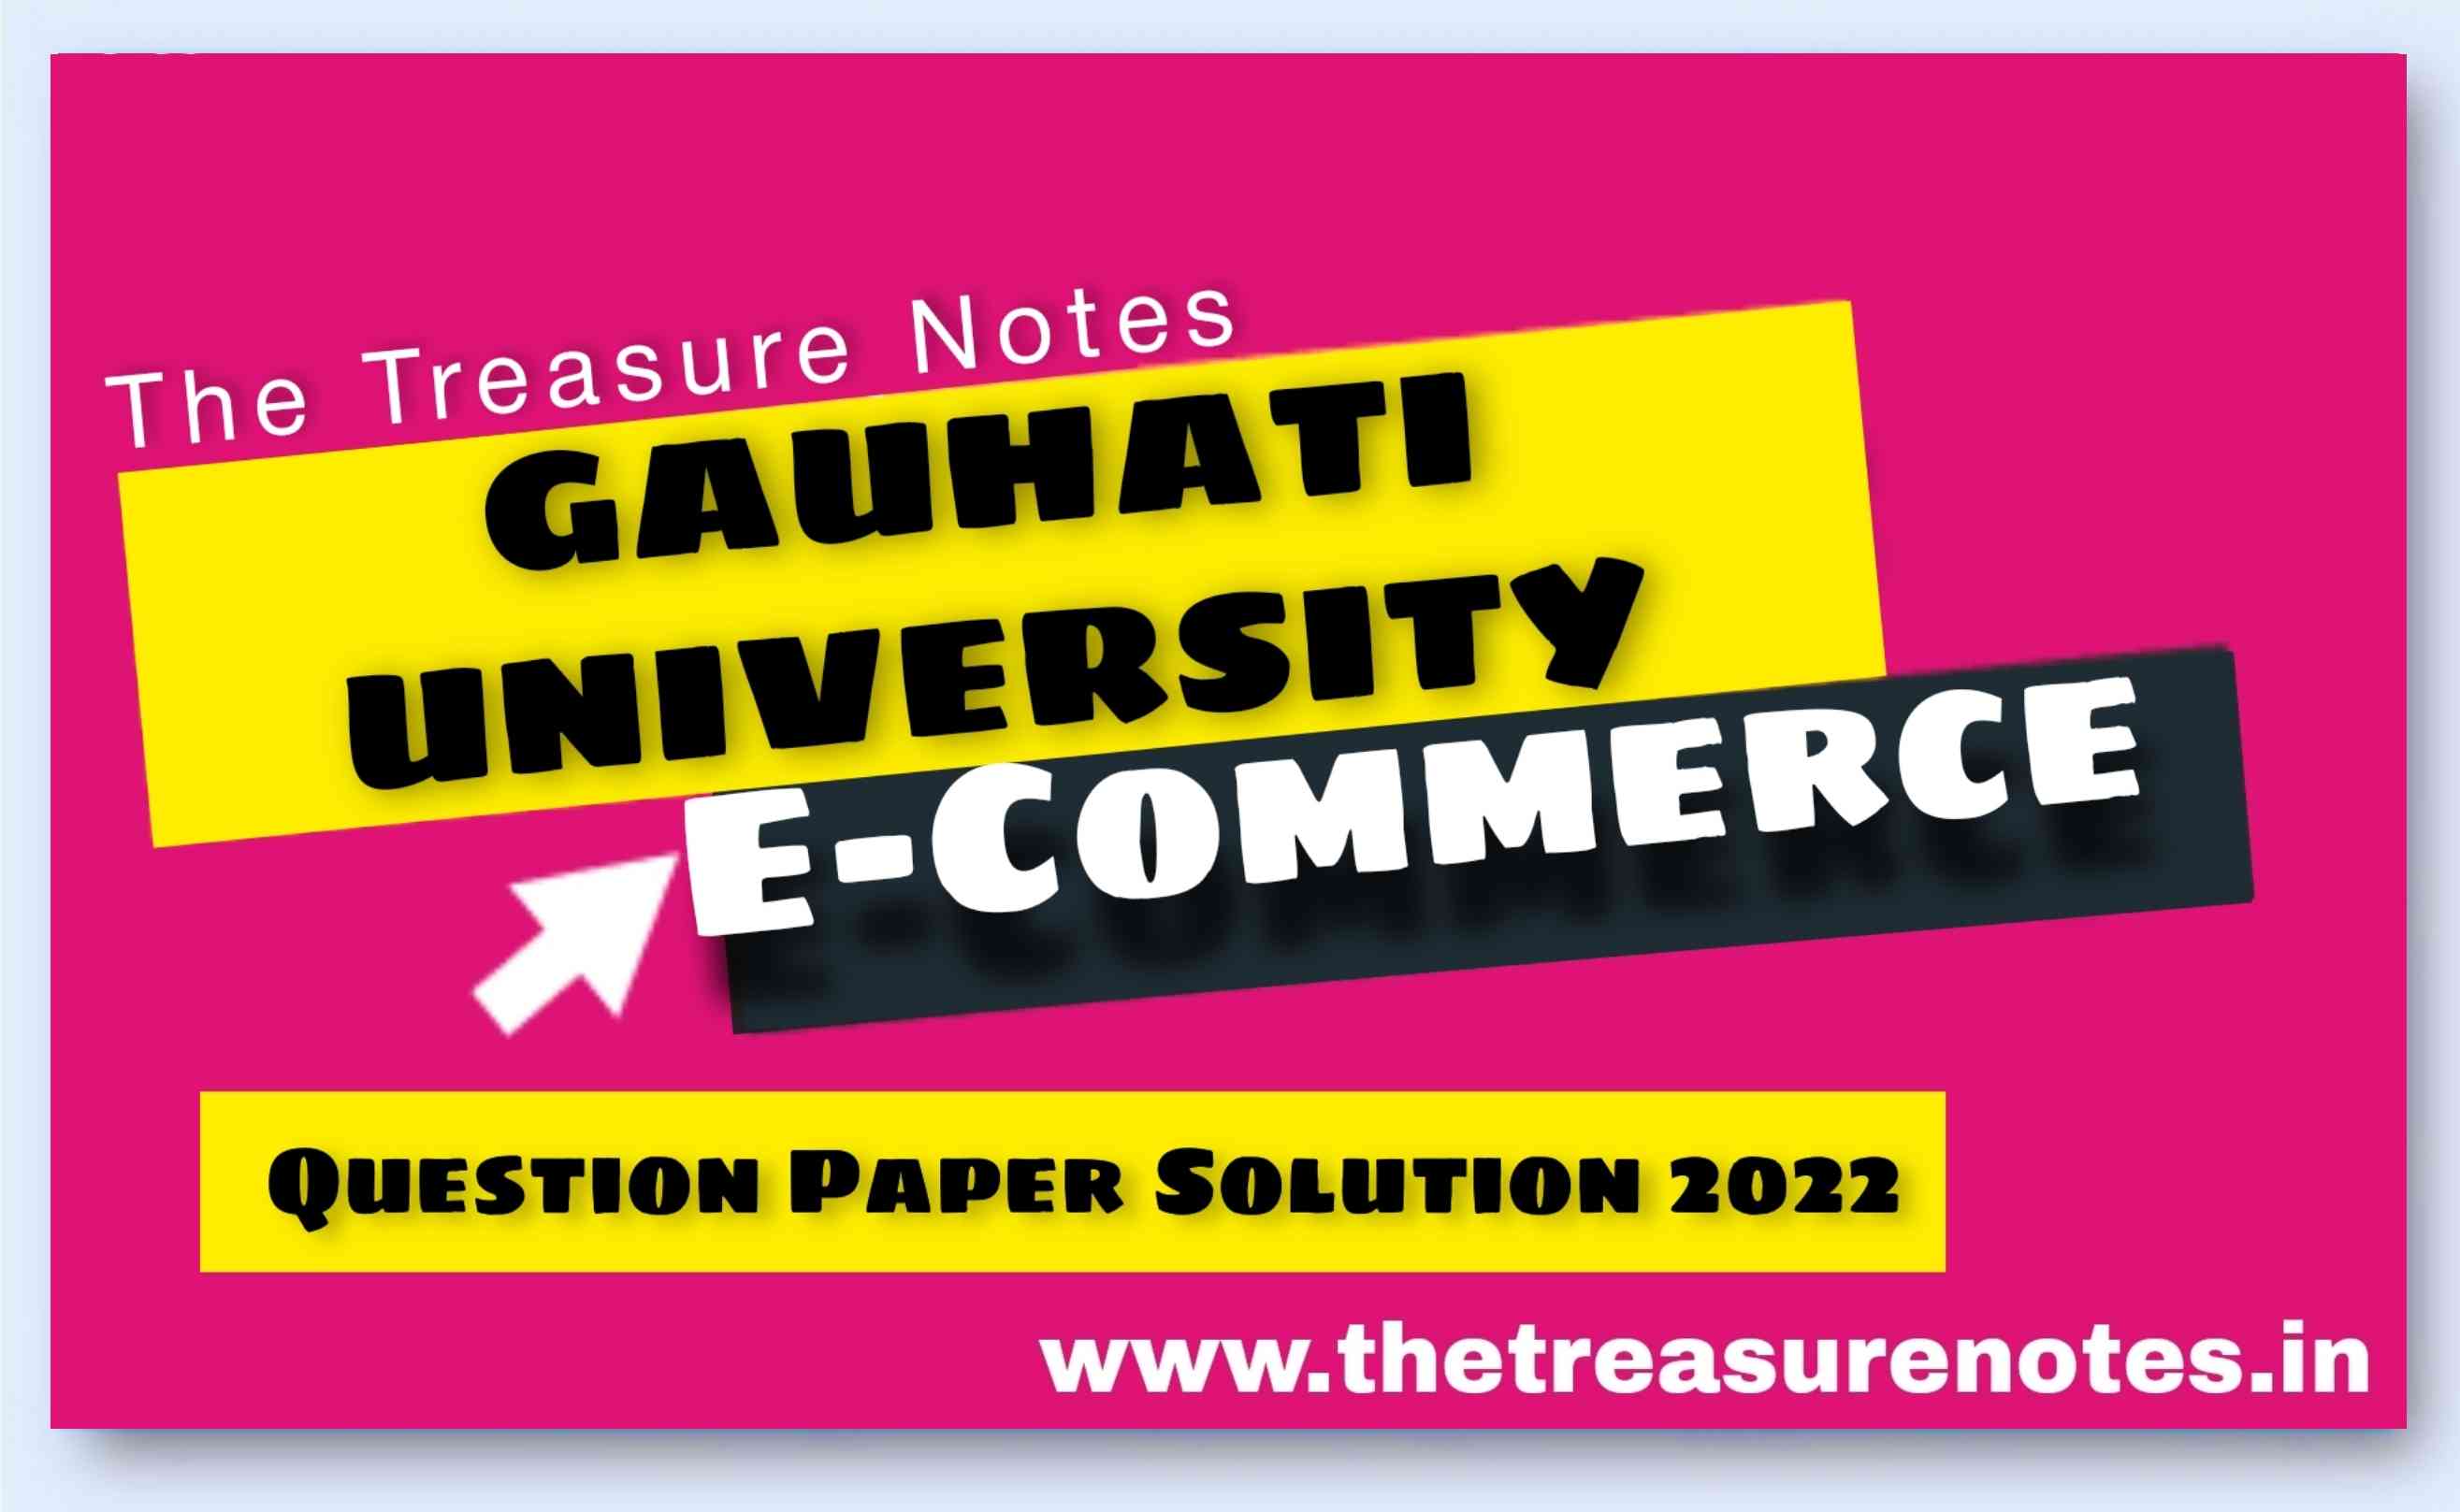 Gauhati University E-Commerce Question Paper Solution 2022 | B.com 4th Sem CBCS  Pettern, GU E-Commerce Questions Paper Solution 2022